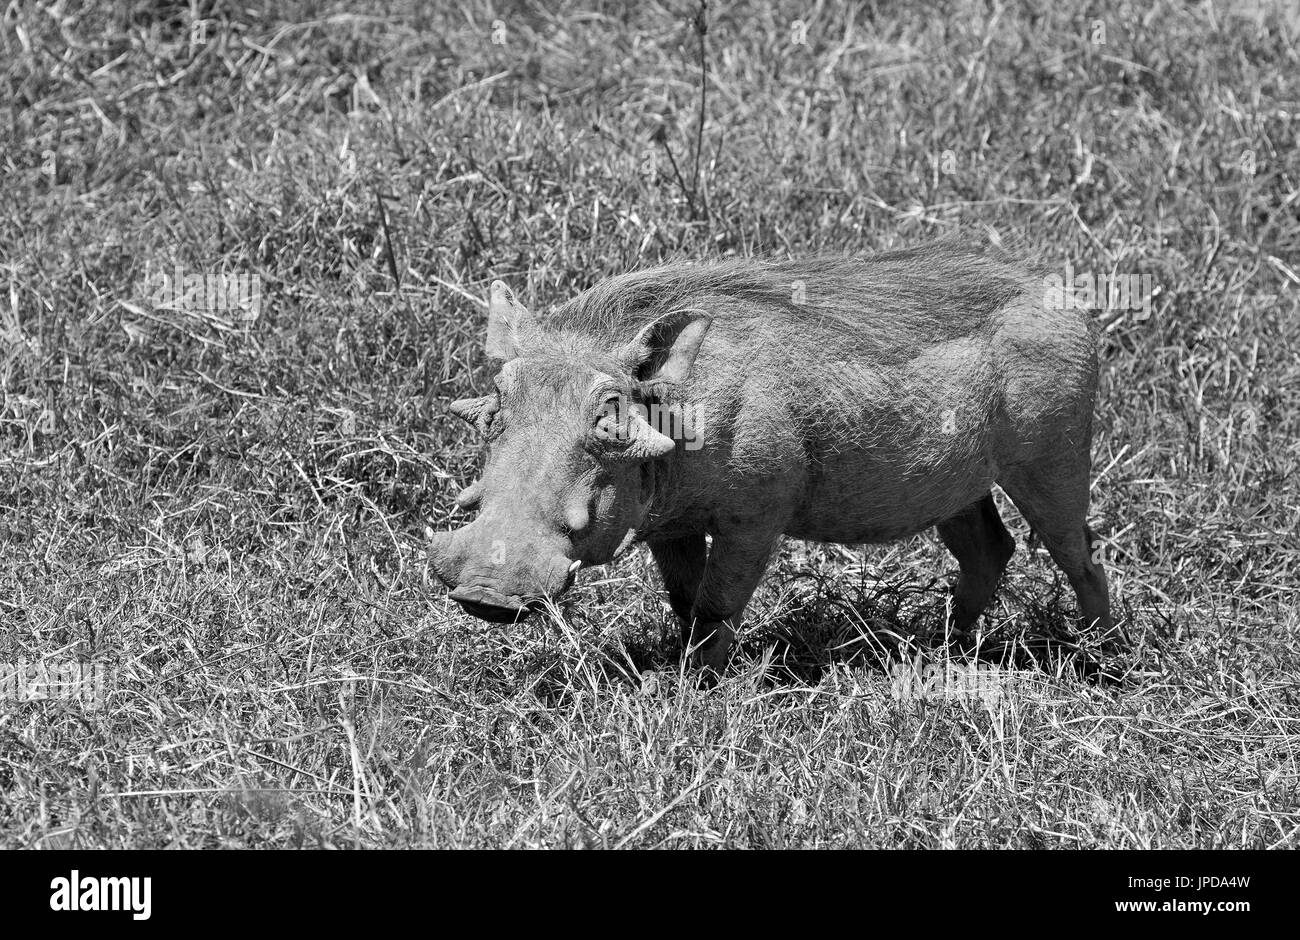 Wild warthog taken in african safari Stock Photo